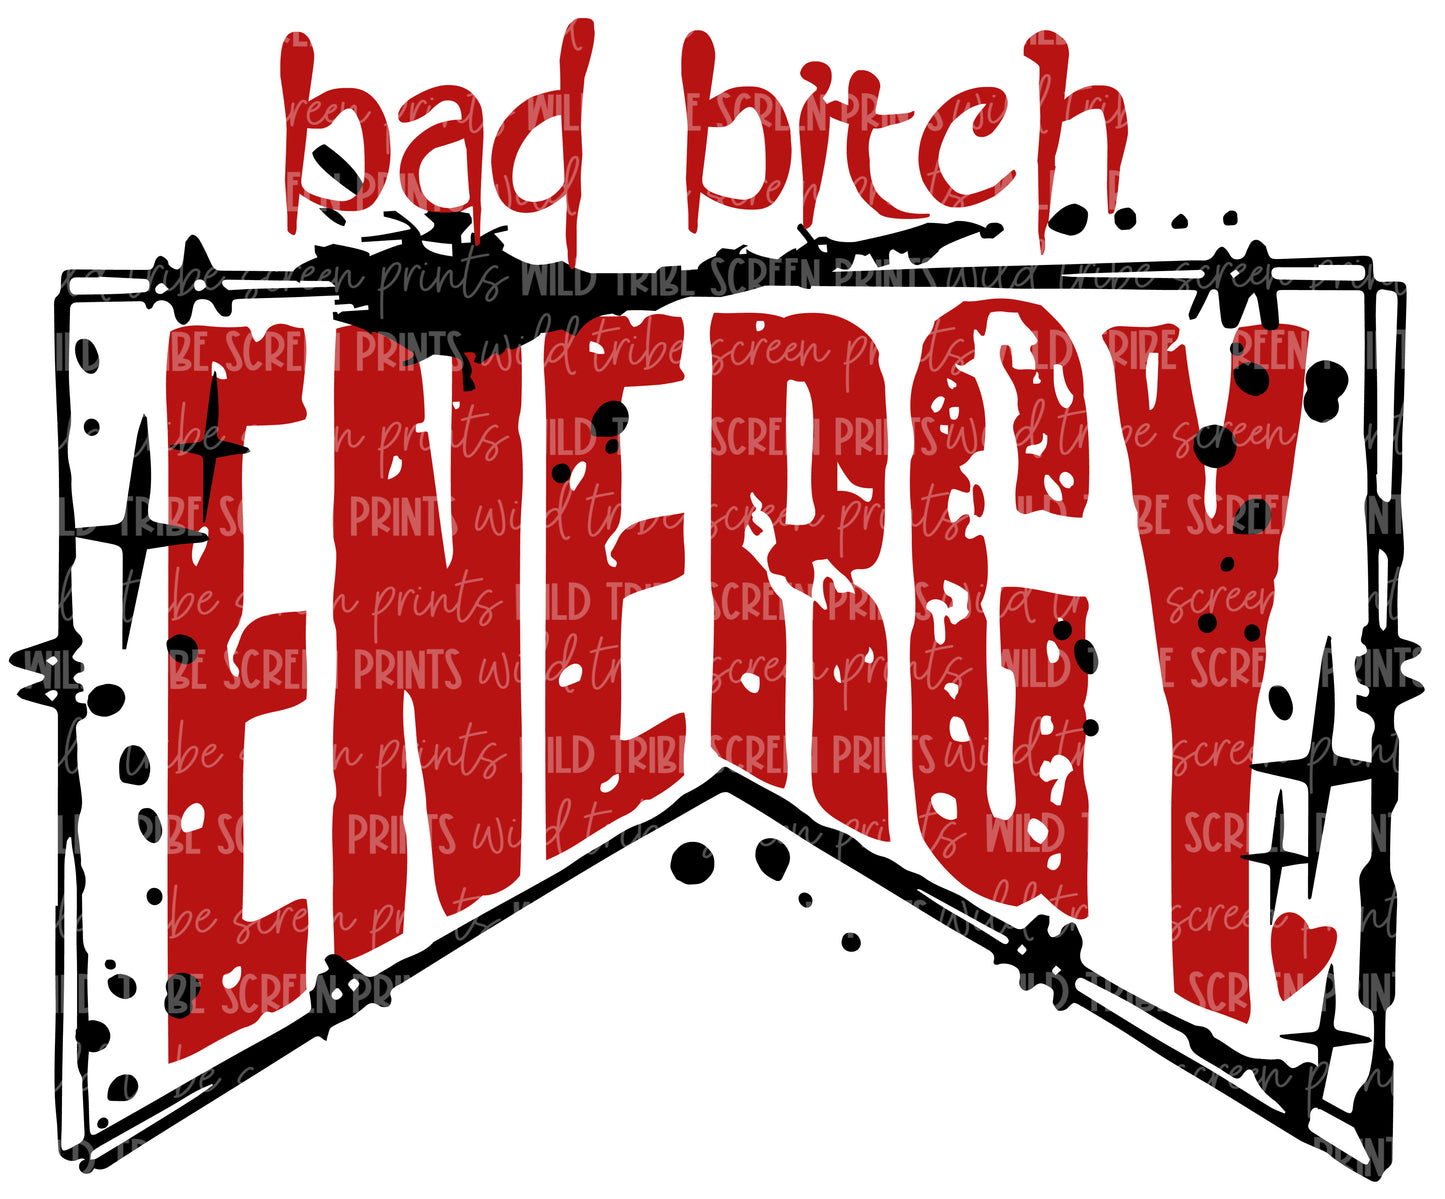 Bad bitch energy